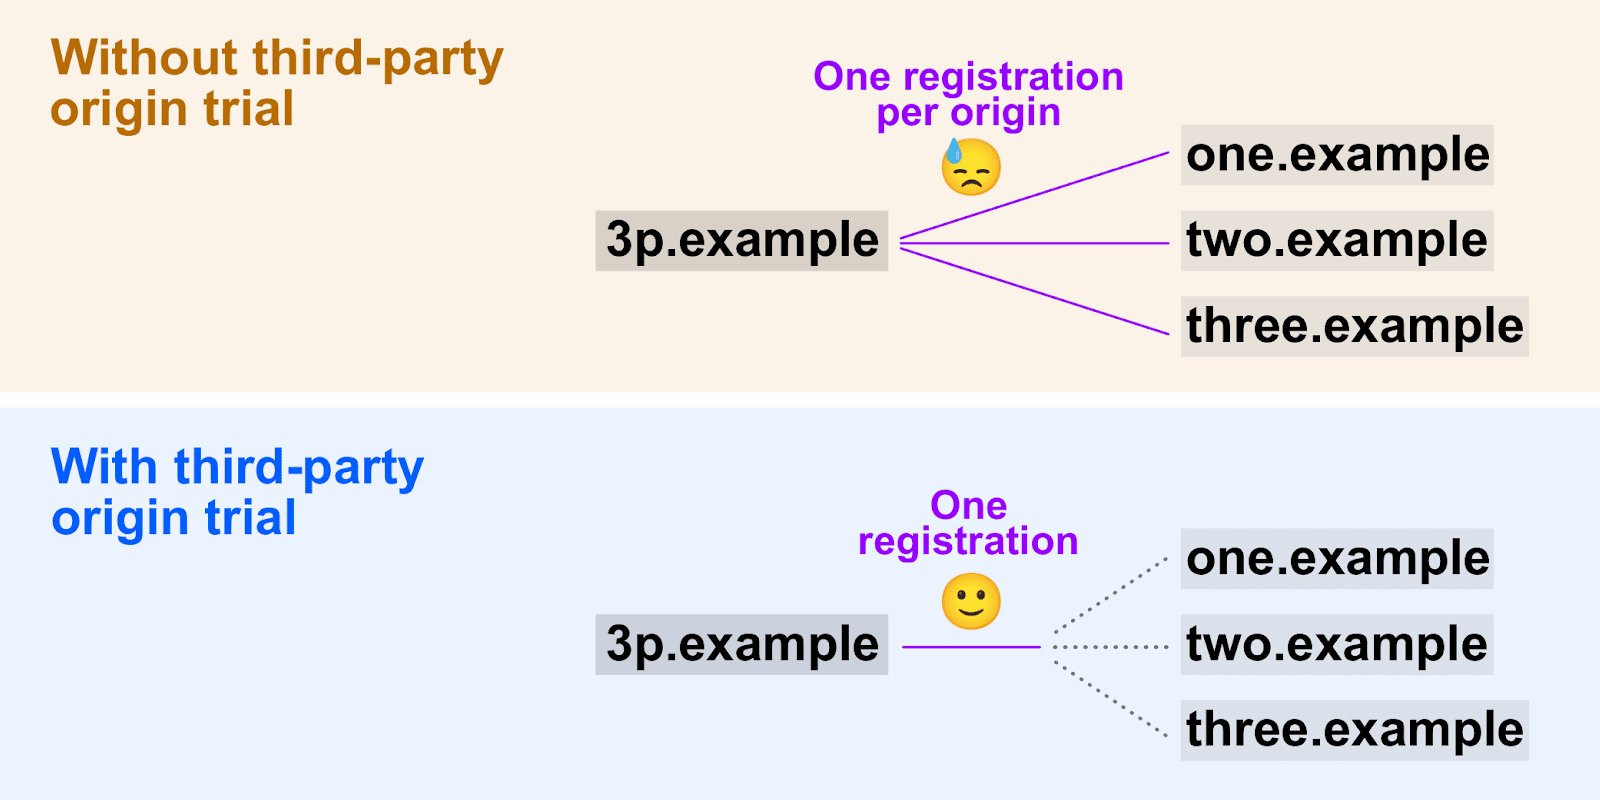 رسم بياني يوضّح الطريقة التي تتيح بها تجارب المصادر التابعة لجهات خارجية استخدام رمز مميّز واحد للتسجيل في مصادر متعددة.